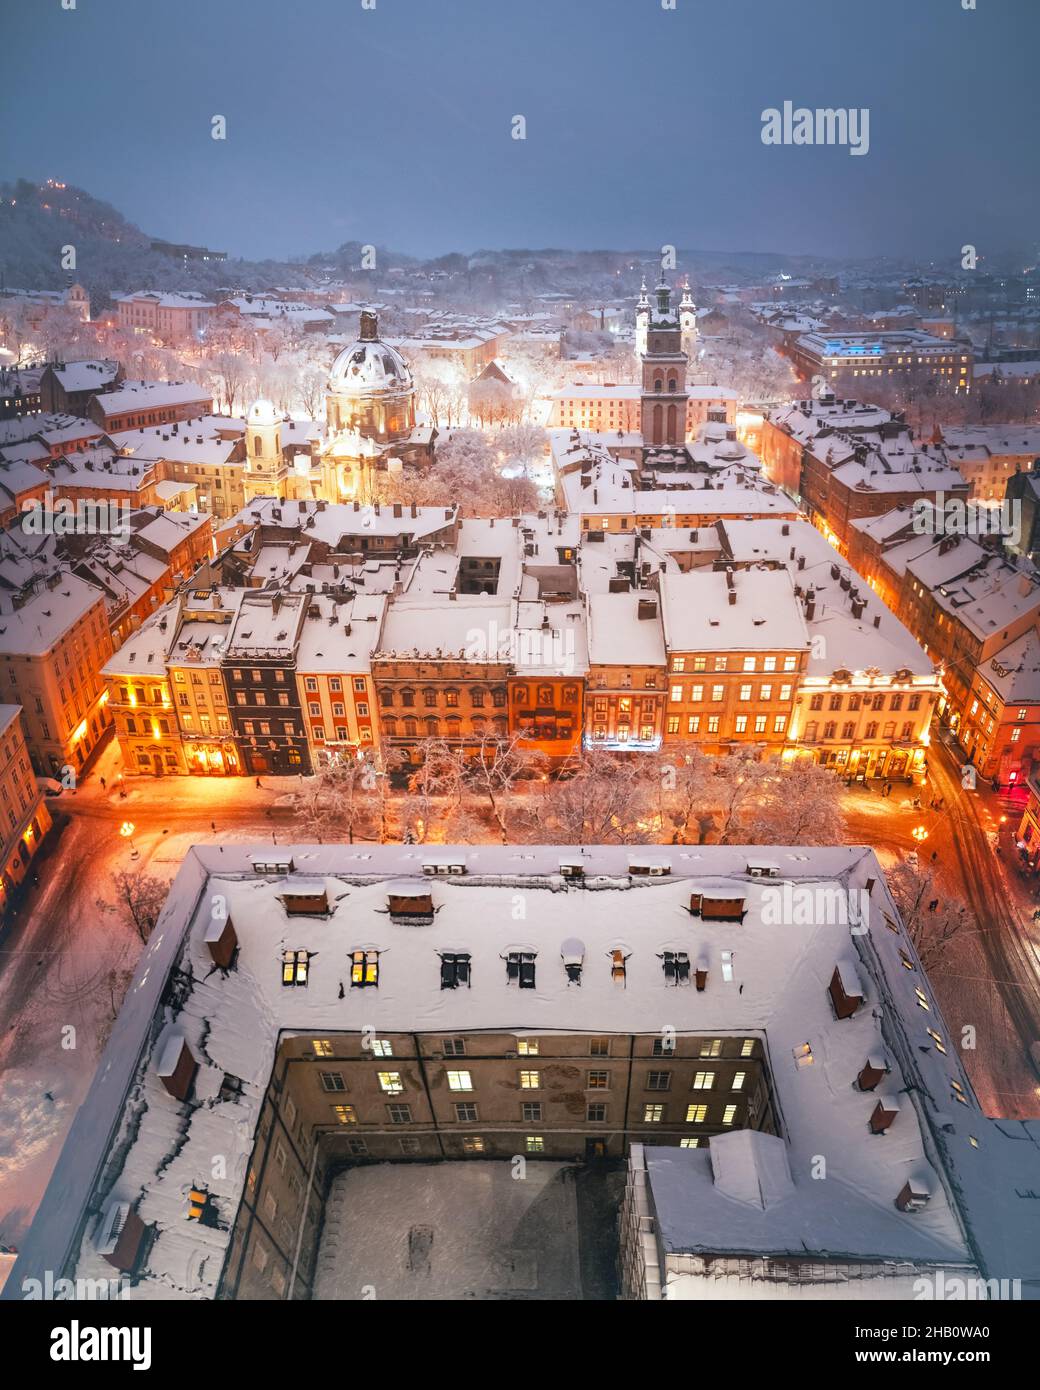 Magnifique paysage urbain d'hiver ville de Lviv illuminée par les lumières de la ville avec des toits couverts de neige du sommet de l'hôtel de ville, Ukraine, Europe.Photographie de paysage Banque D'Images